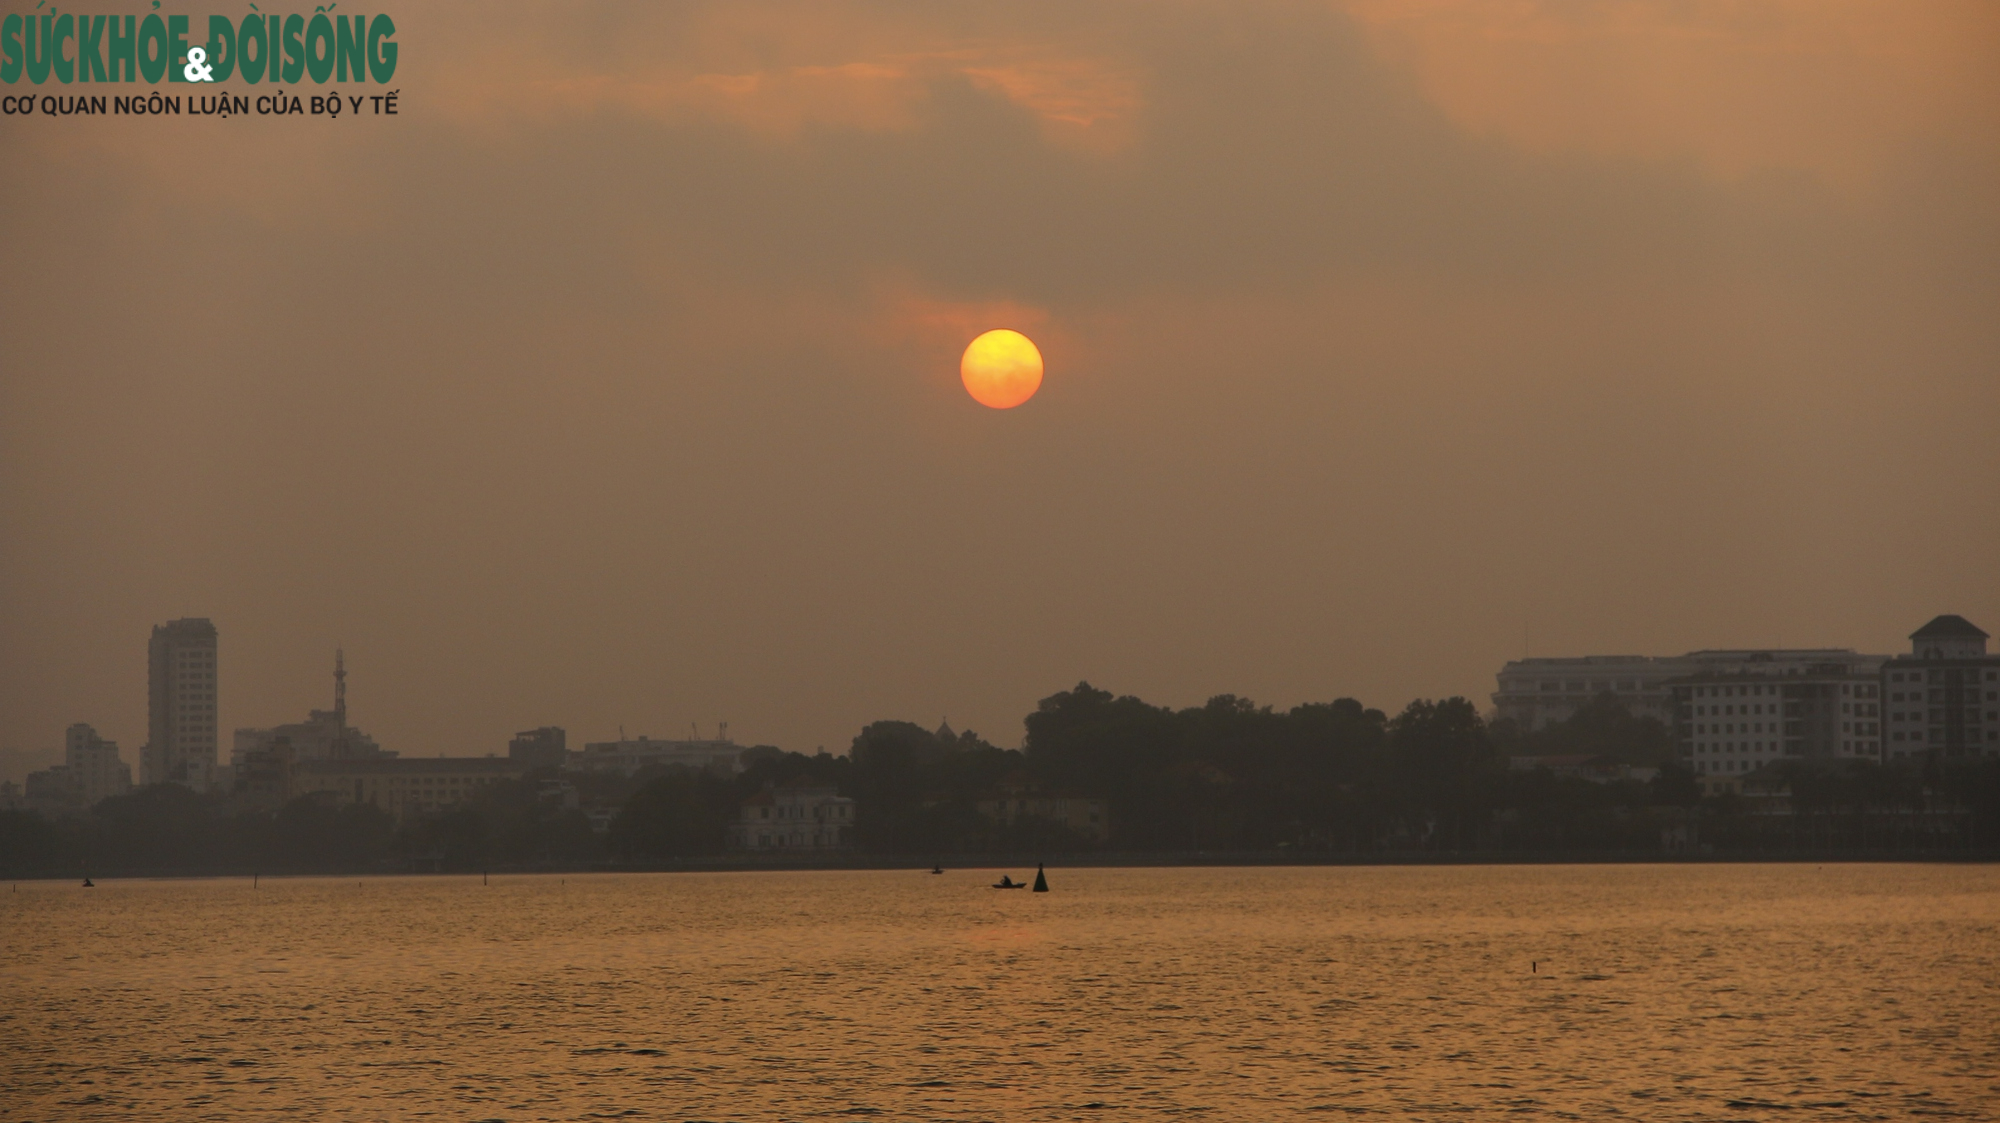 Bình Minh Hồ Tây: Bức tranh sáng tạo và màu sắc được tạo bởi ánh nắng mặt trời đầu tiên của ngày mới, tạo nên khung cảnh thanh bình và tuyệt đẹp. Hãy thưởng thức hình ảnh Bình Minh Hồ Tây để cảm nhận được sự yên bình và thoải mái.